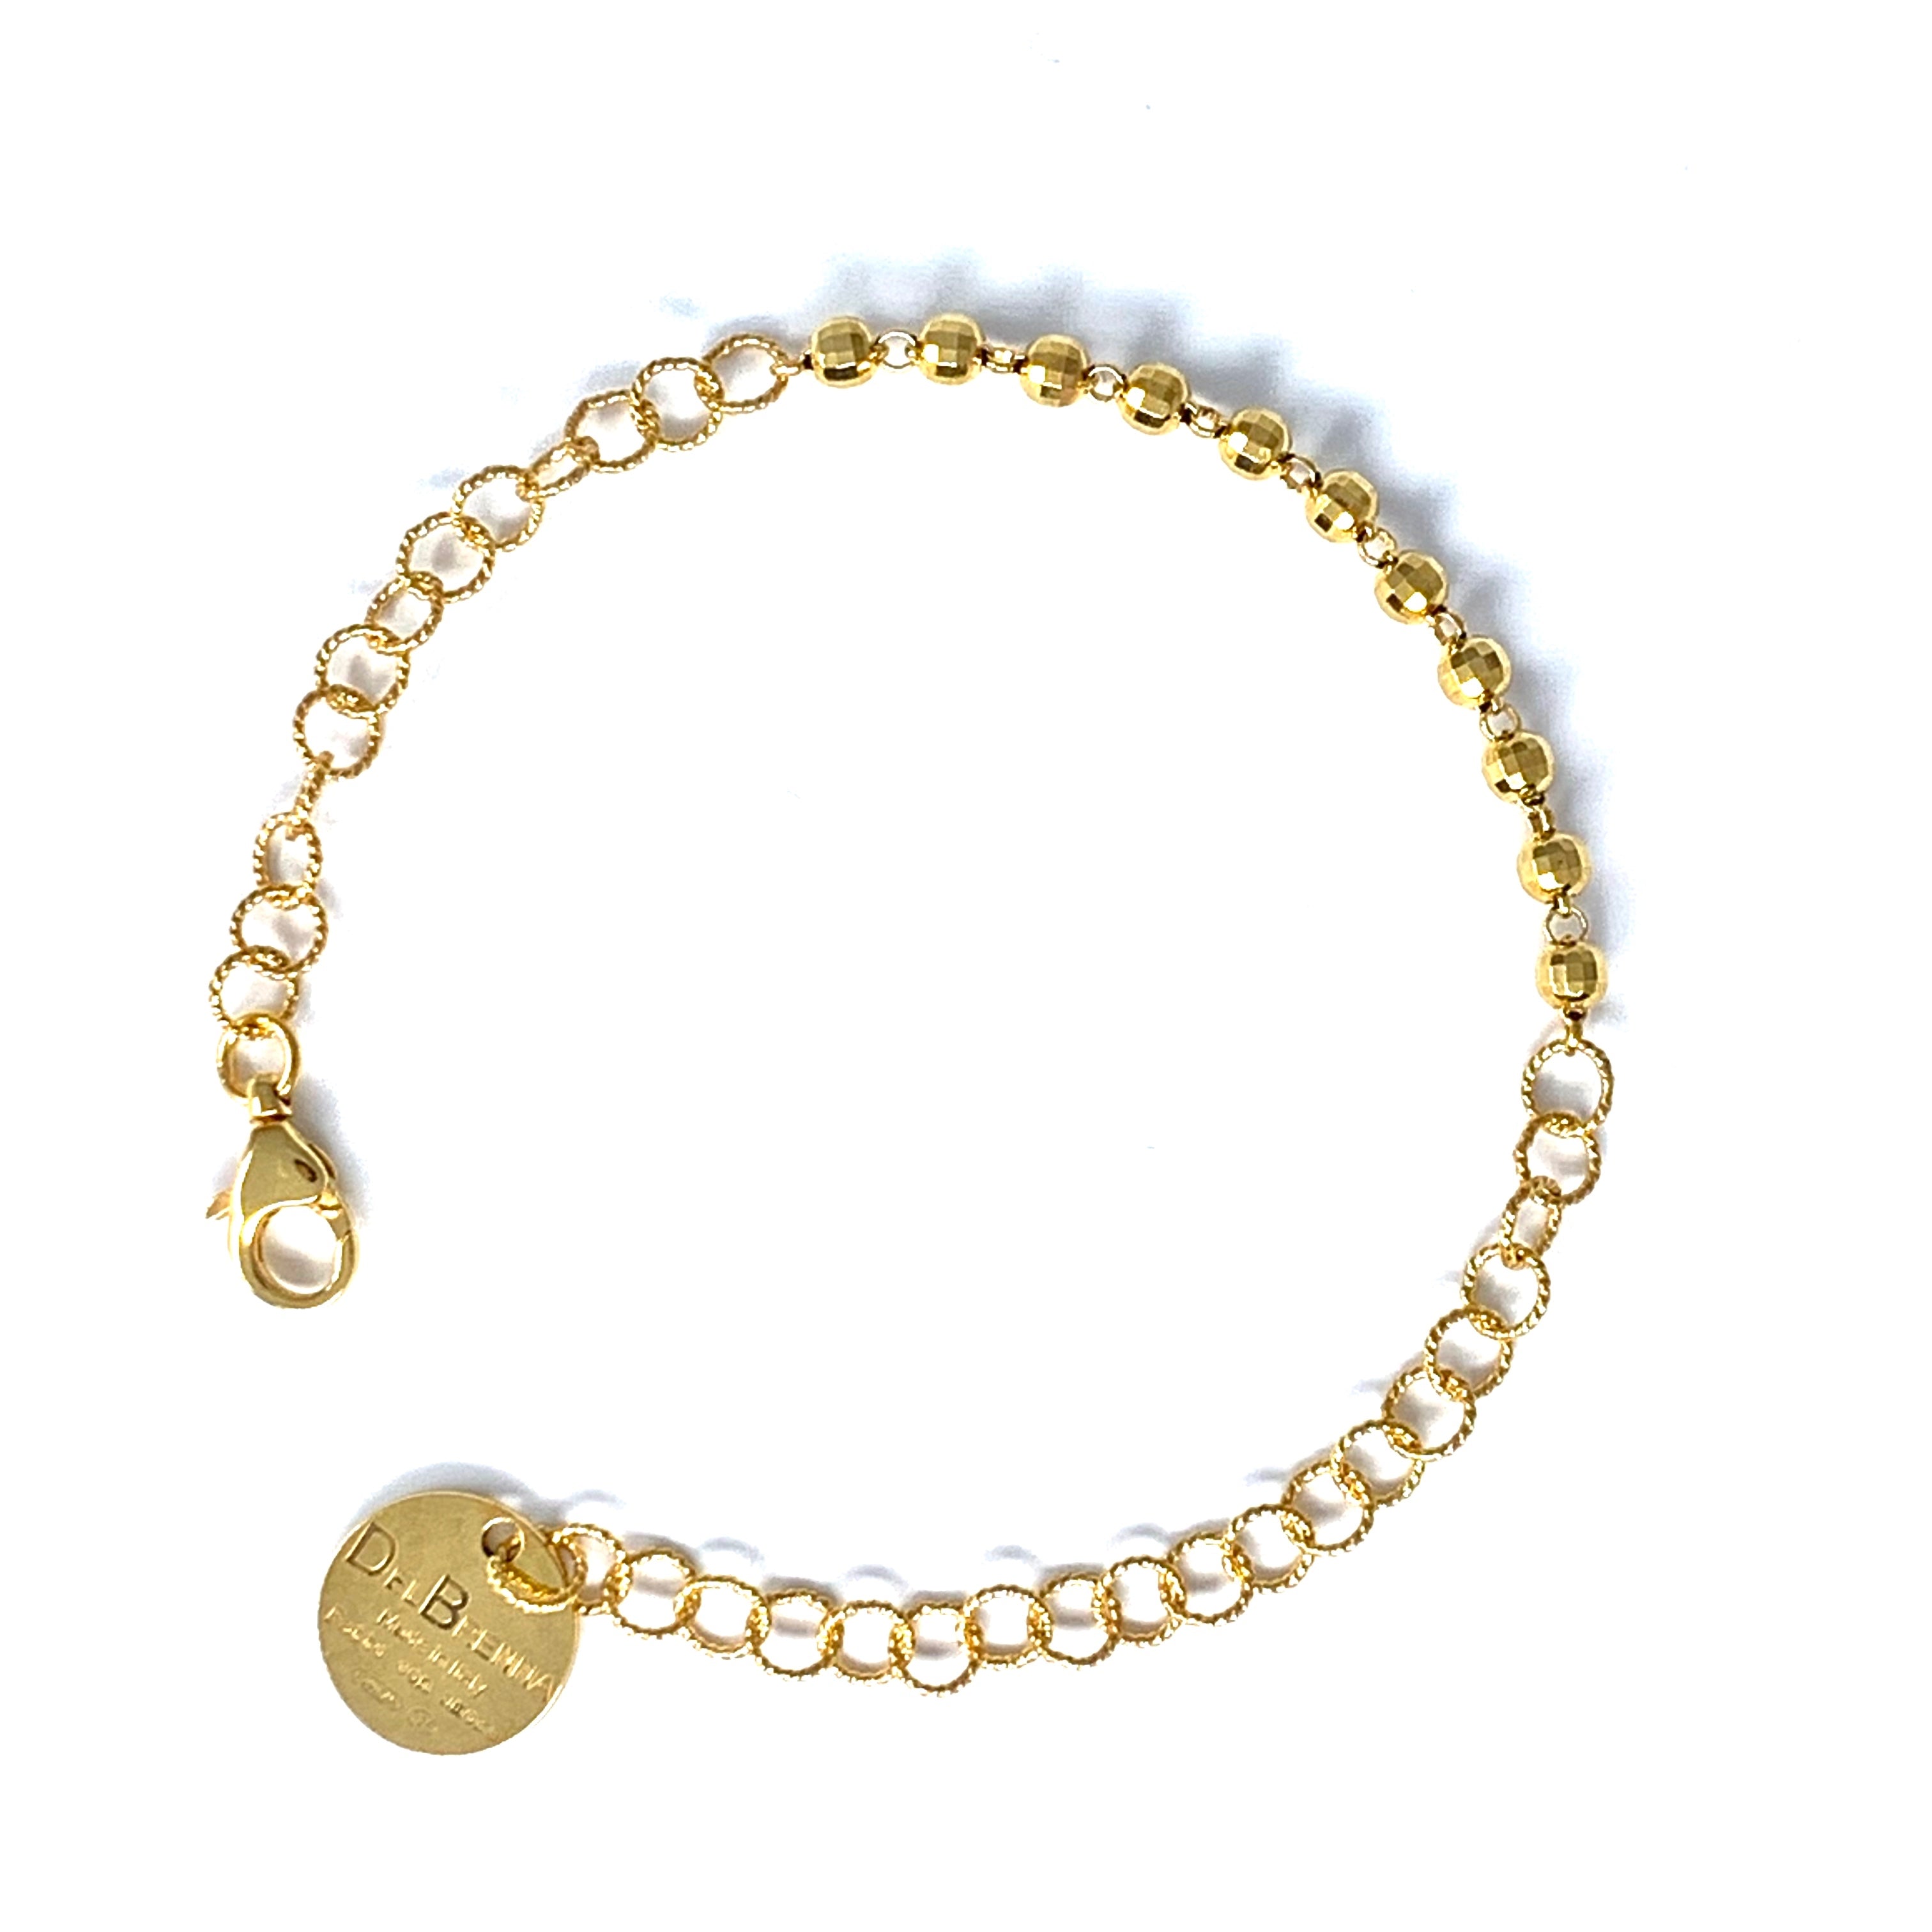 Wispy 5mm Bracelet in Gold with Diamond Beads